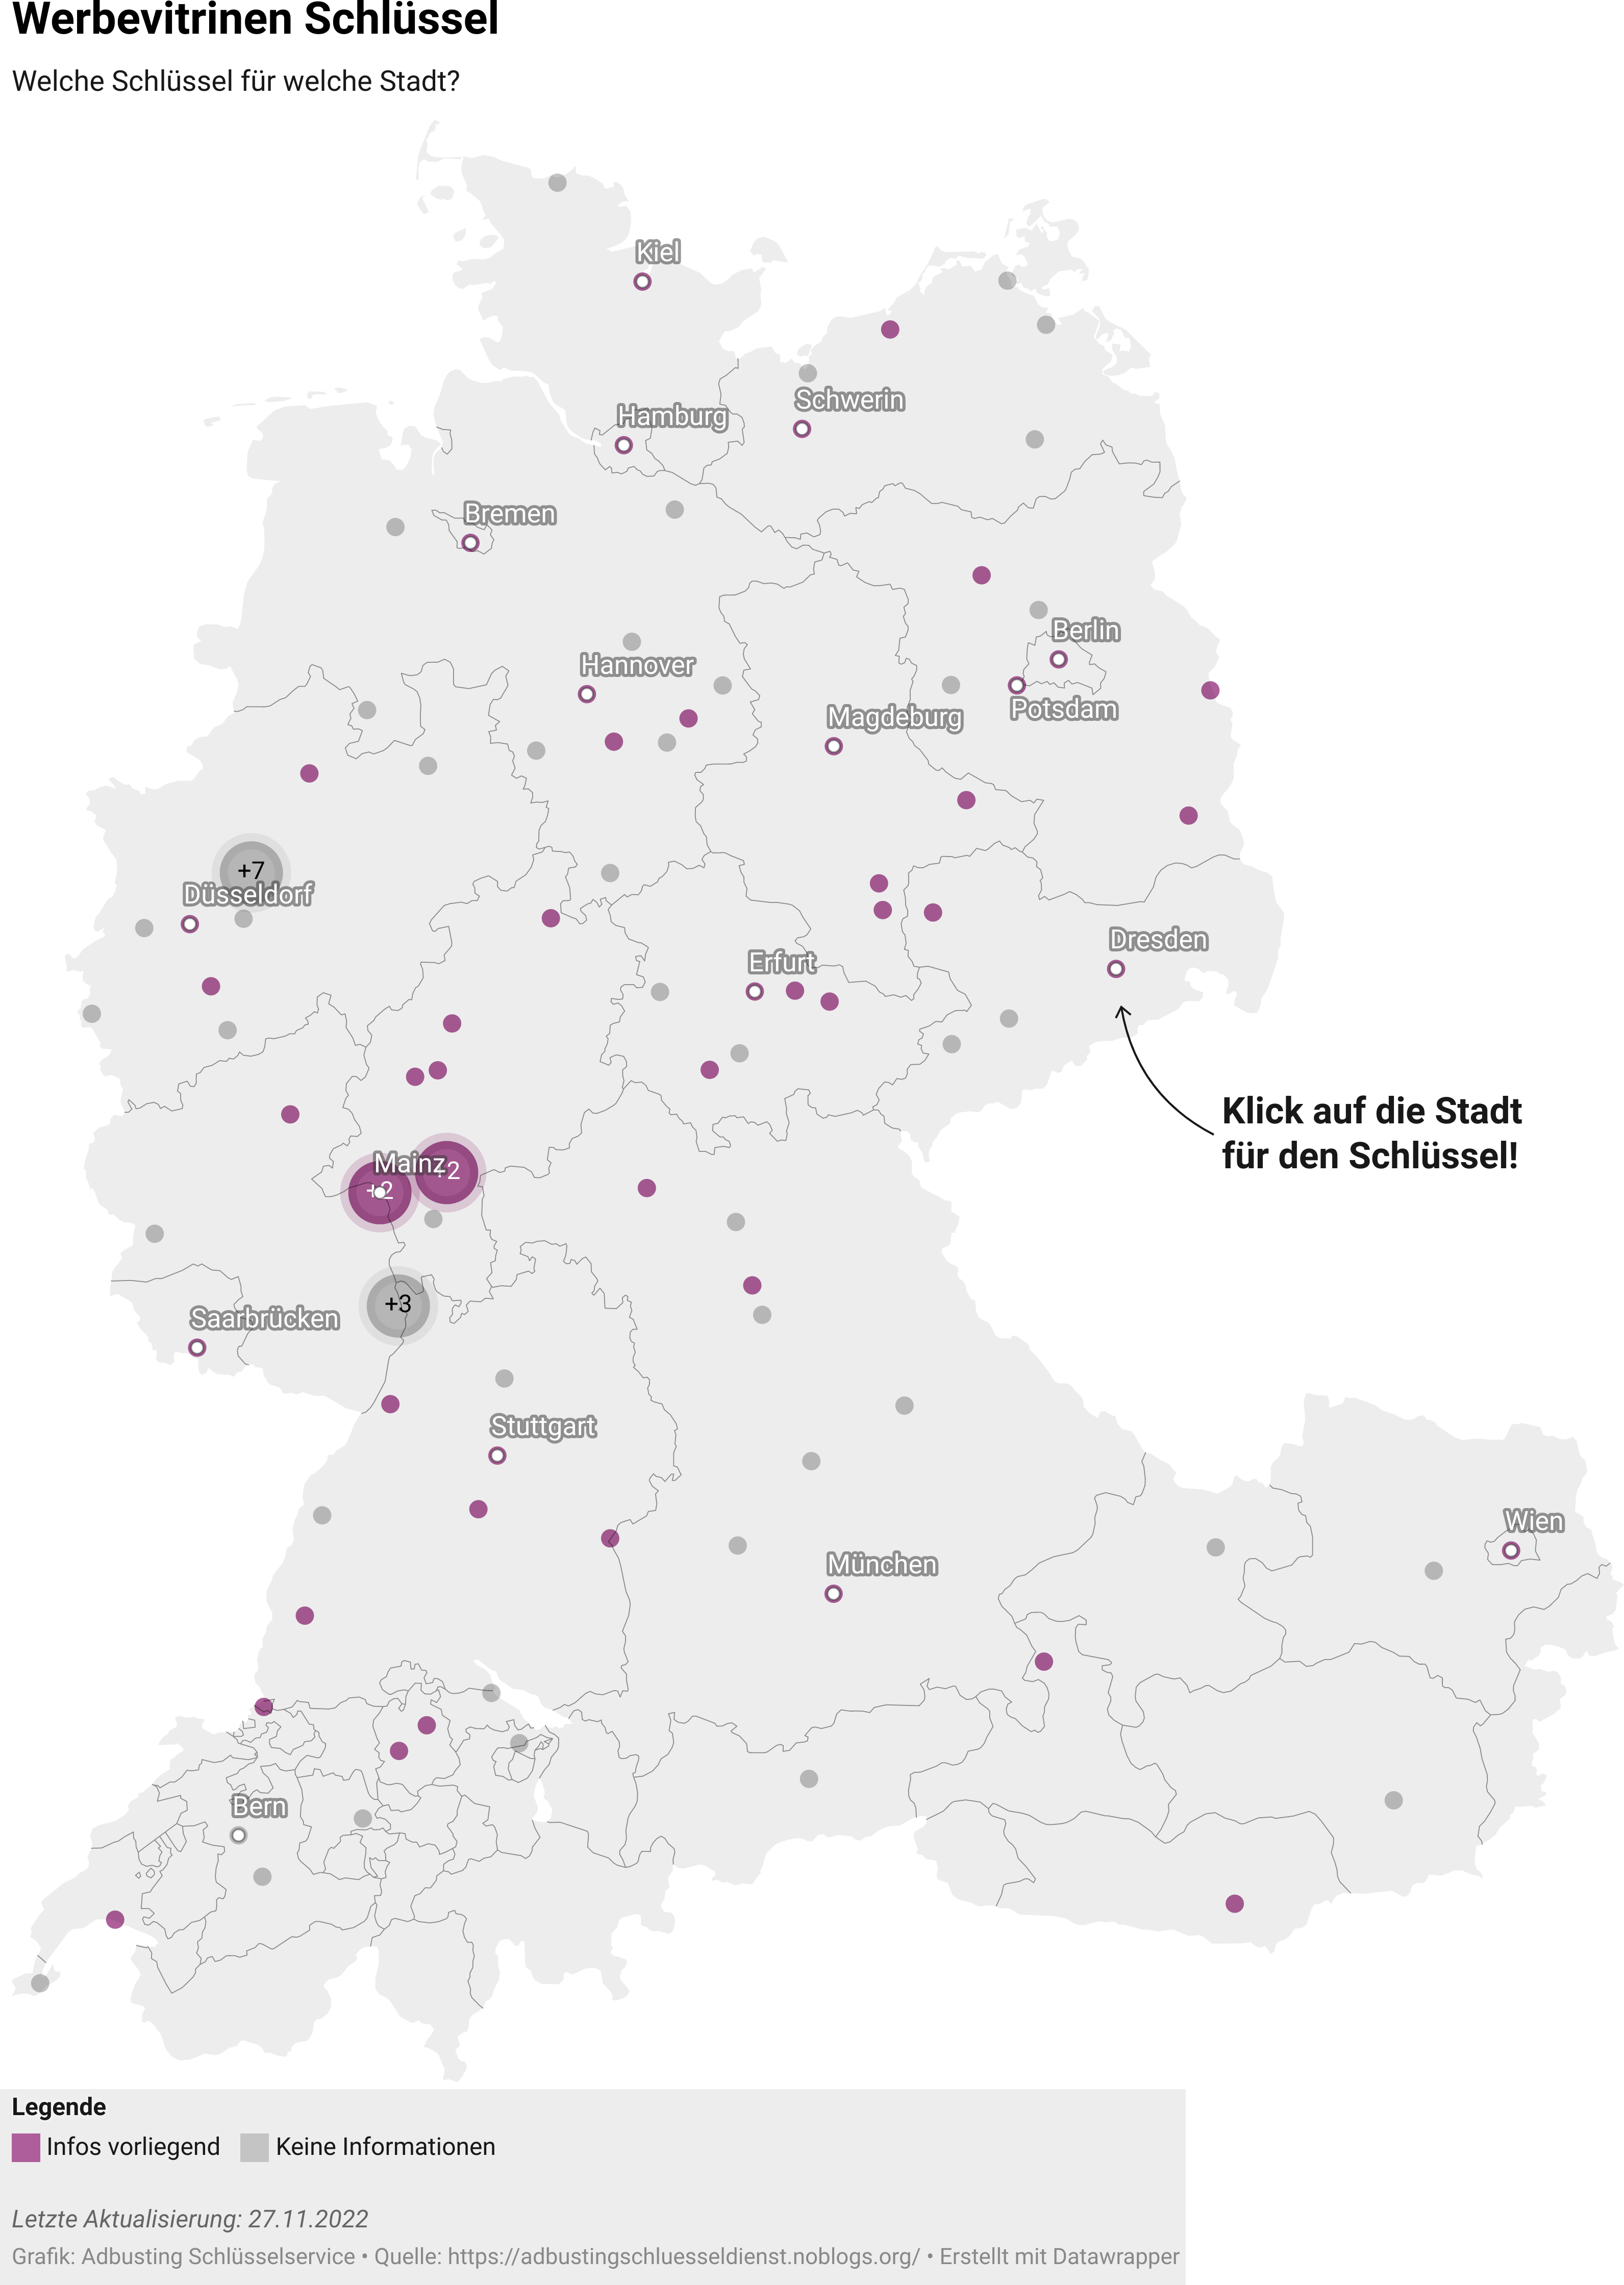 Eine Karte von Österreich, Schweiz und Deutschland mit Punkten auf den größten Städten. Der Link führt zu einer datawrapper-Landkarte. Auf dieser Landkarte kann man dann über die Punkte auf der Karte fahren und bekommt Infos zu den häufigsten Schlüsseltypen. Happy Adbusting!